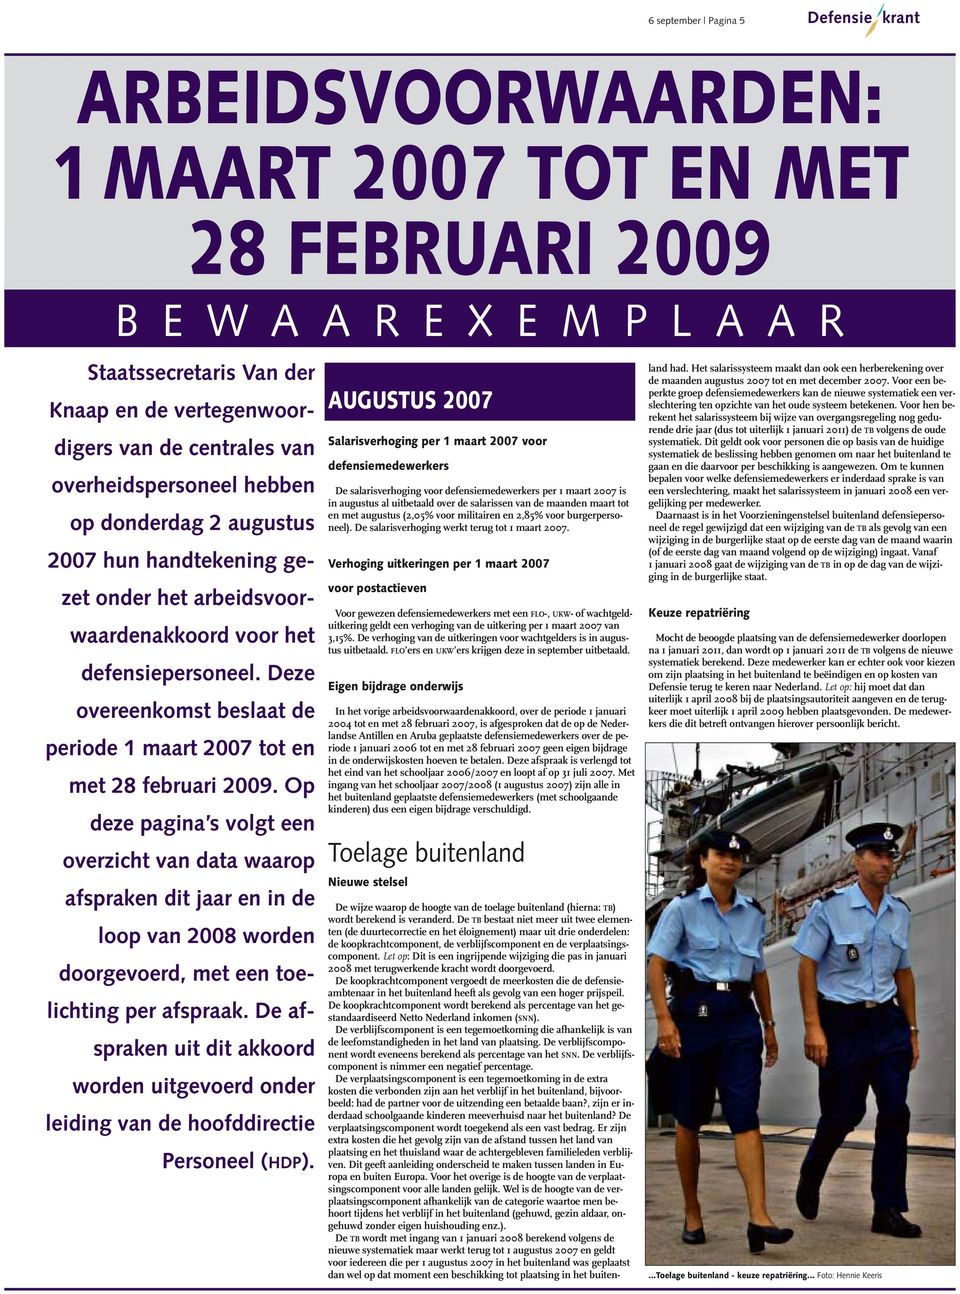 Deze overeenkomst beslaat de periode 1 maart 2007 tot en met 28 februari 2009.